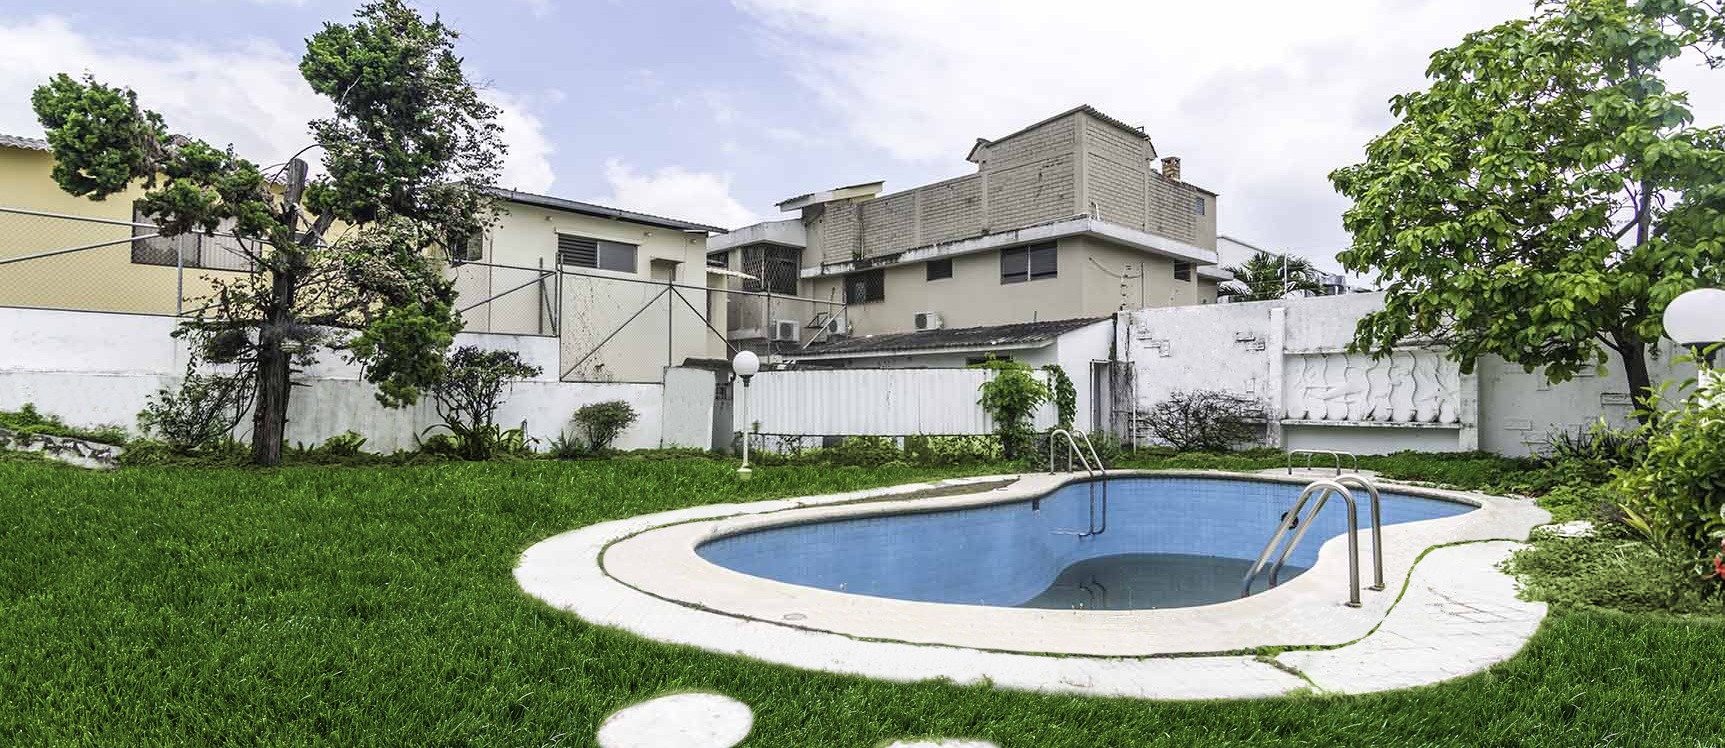 GeoBienes - Casa en venta Urdesa, Norte de Guayaquil  - Plusvalia Guayaquil Casas de venta y alquiler Inmobiliaria Ecuador